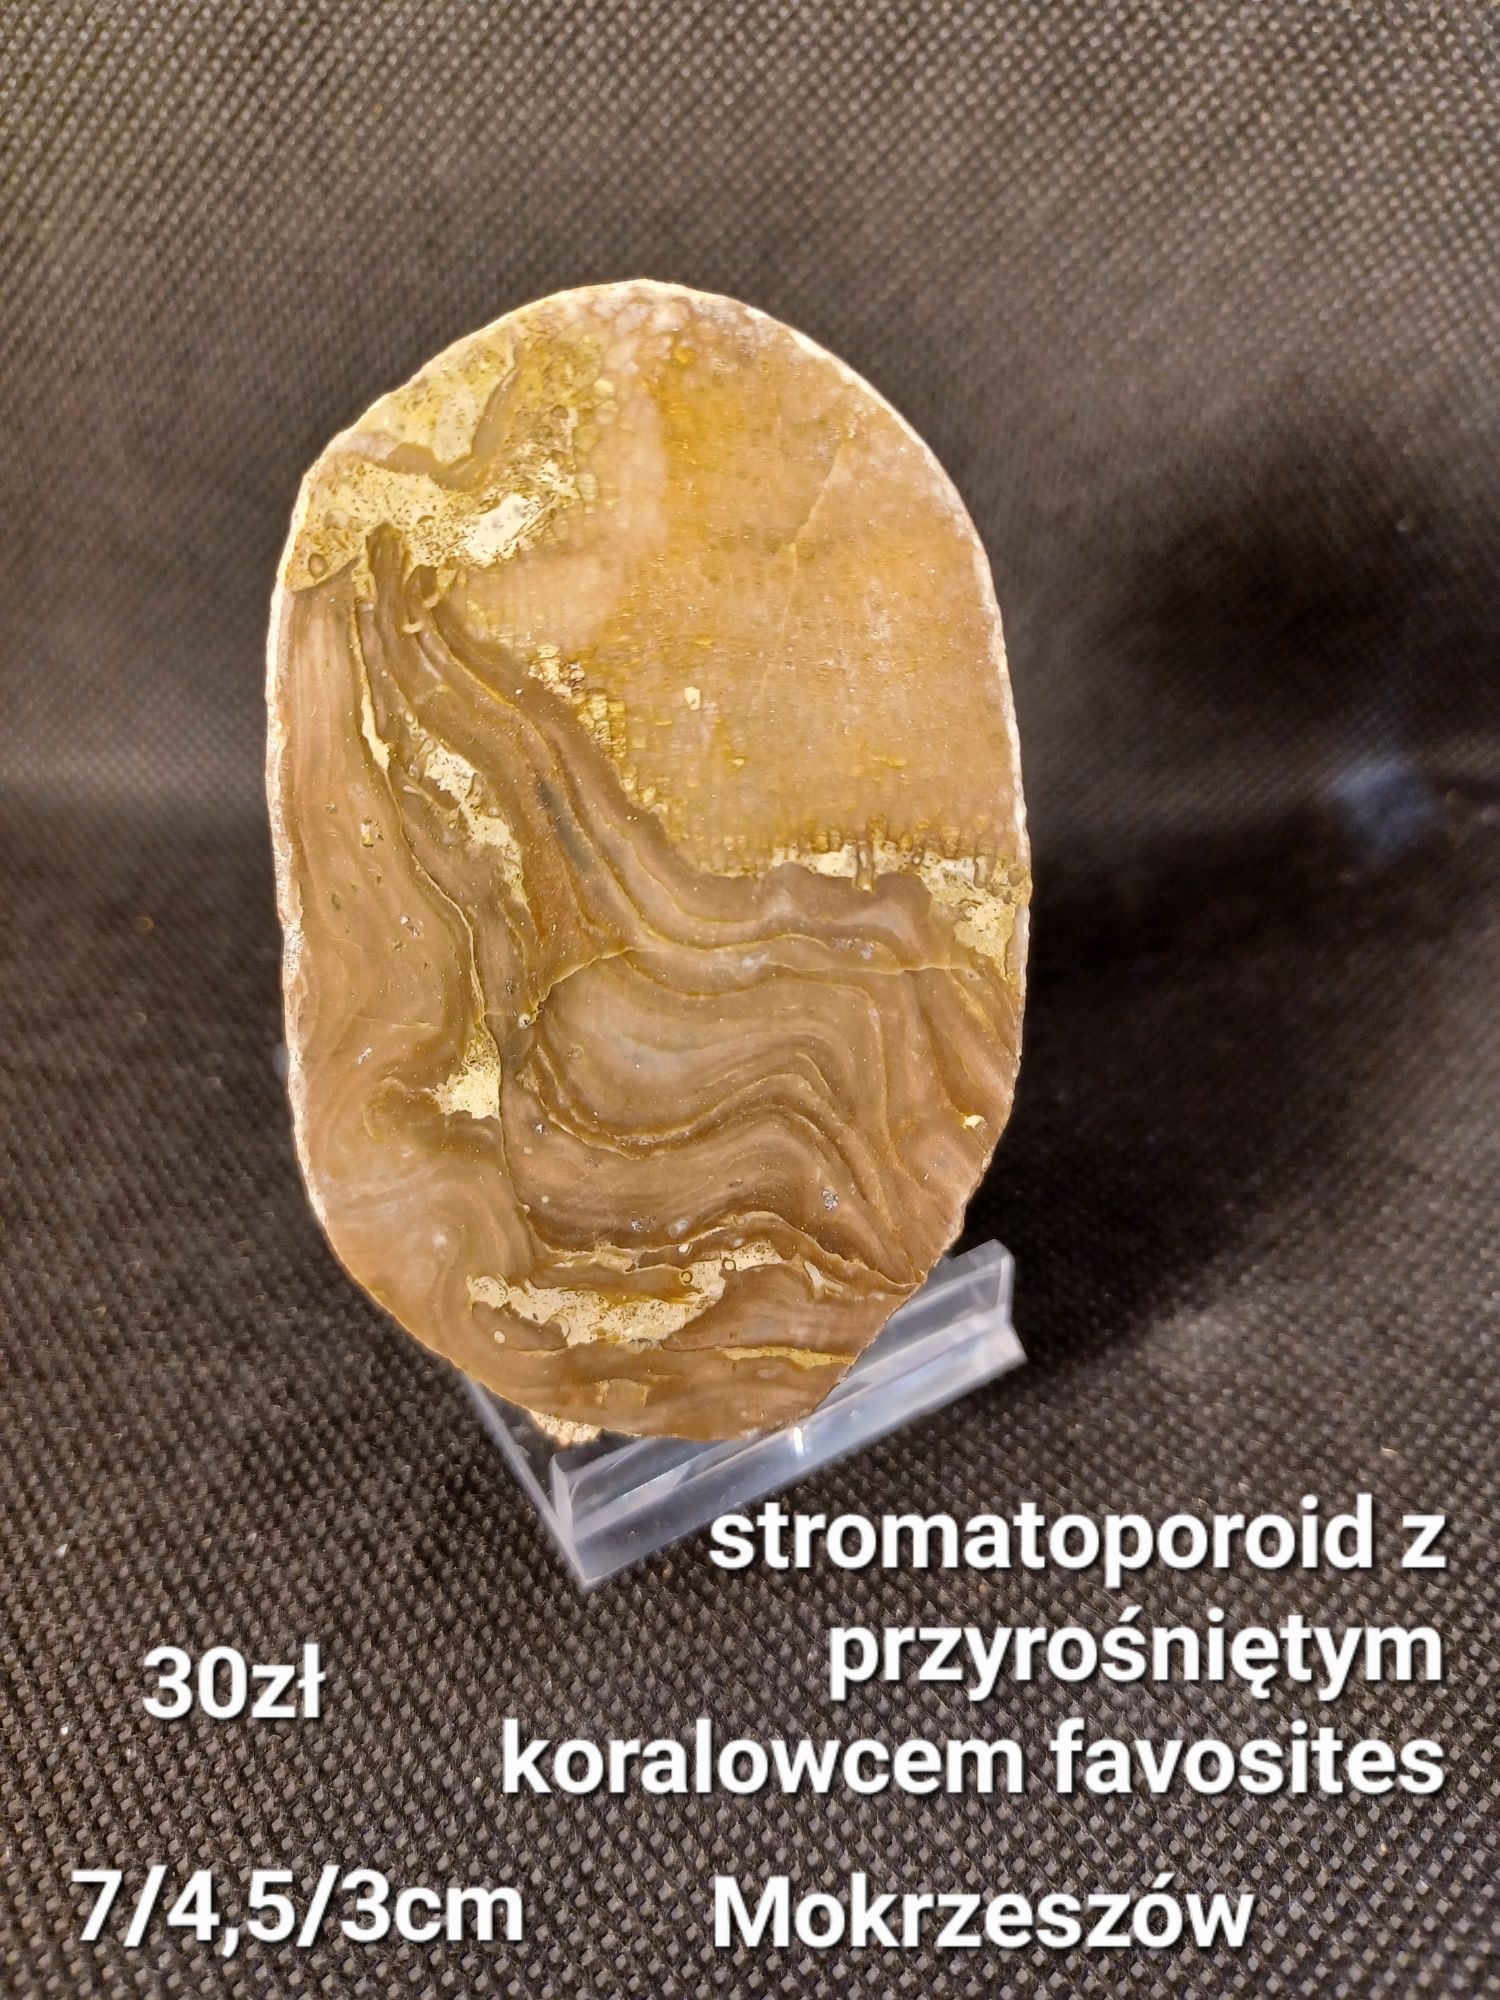 Minerały skamieniałości skały stromatoporoid z koralowcem favosites